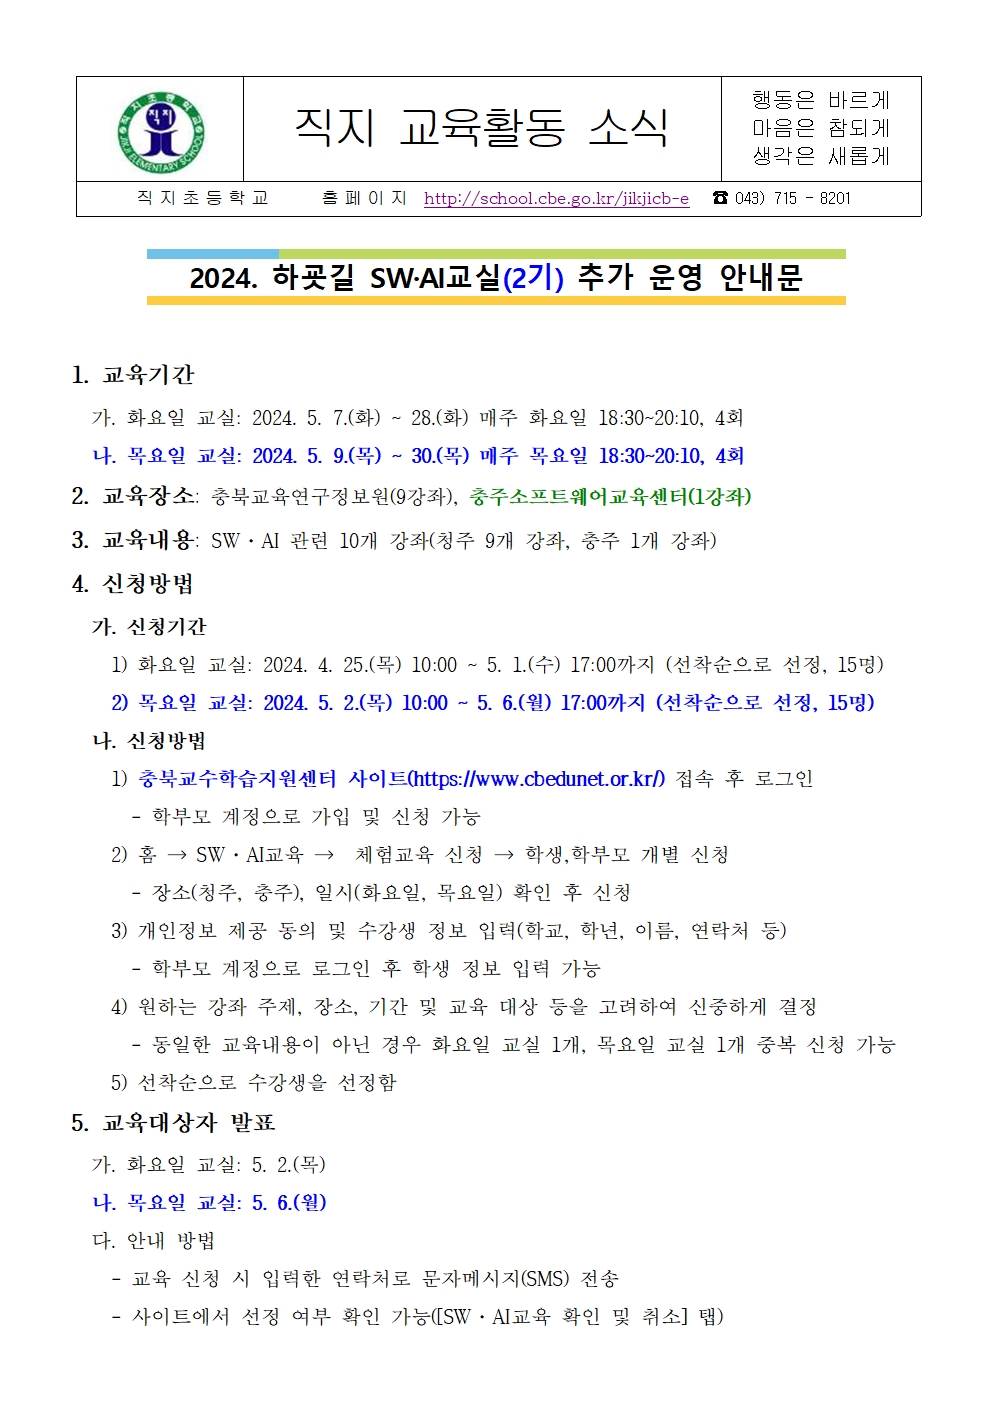 2024. 하굣길 SW·AI교실(2기) 추가 운영 안내 가정통신문001